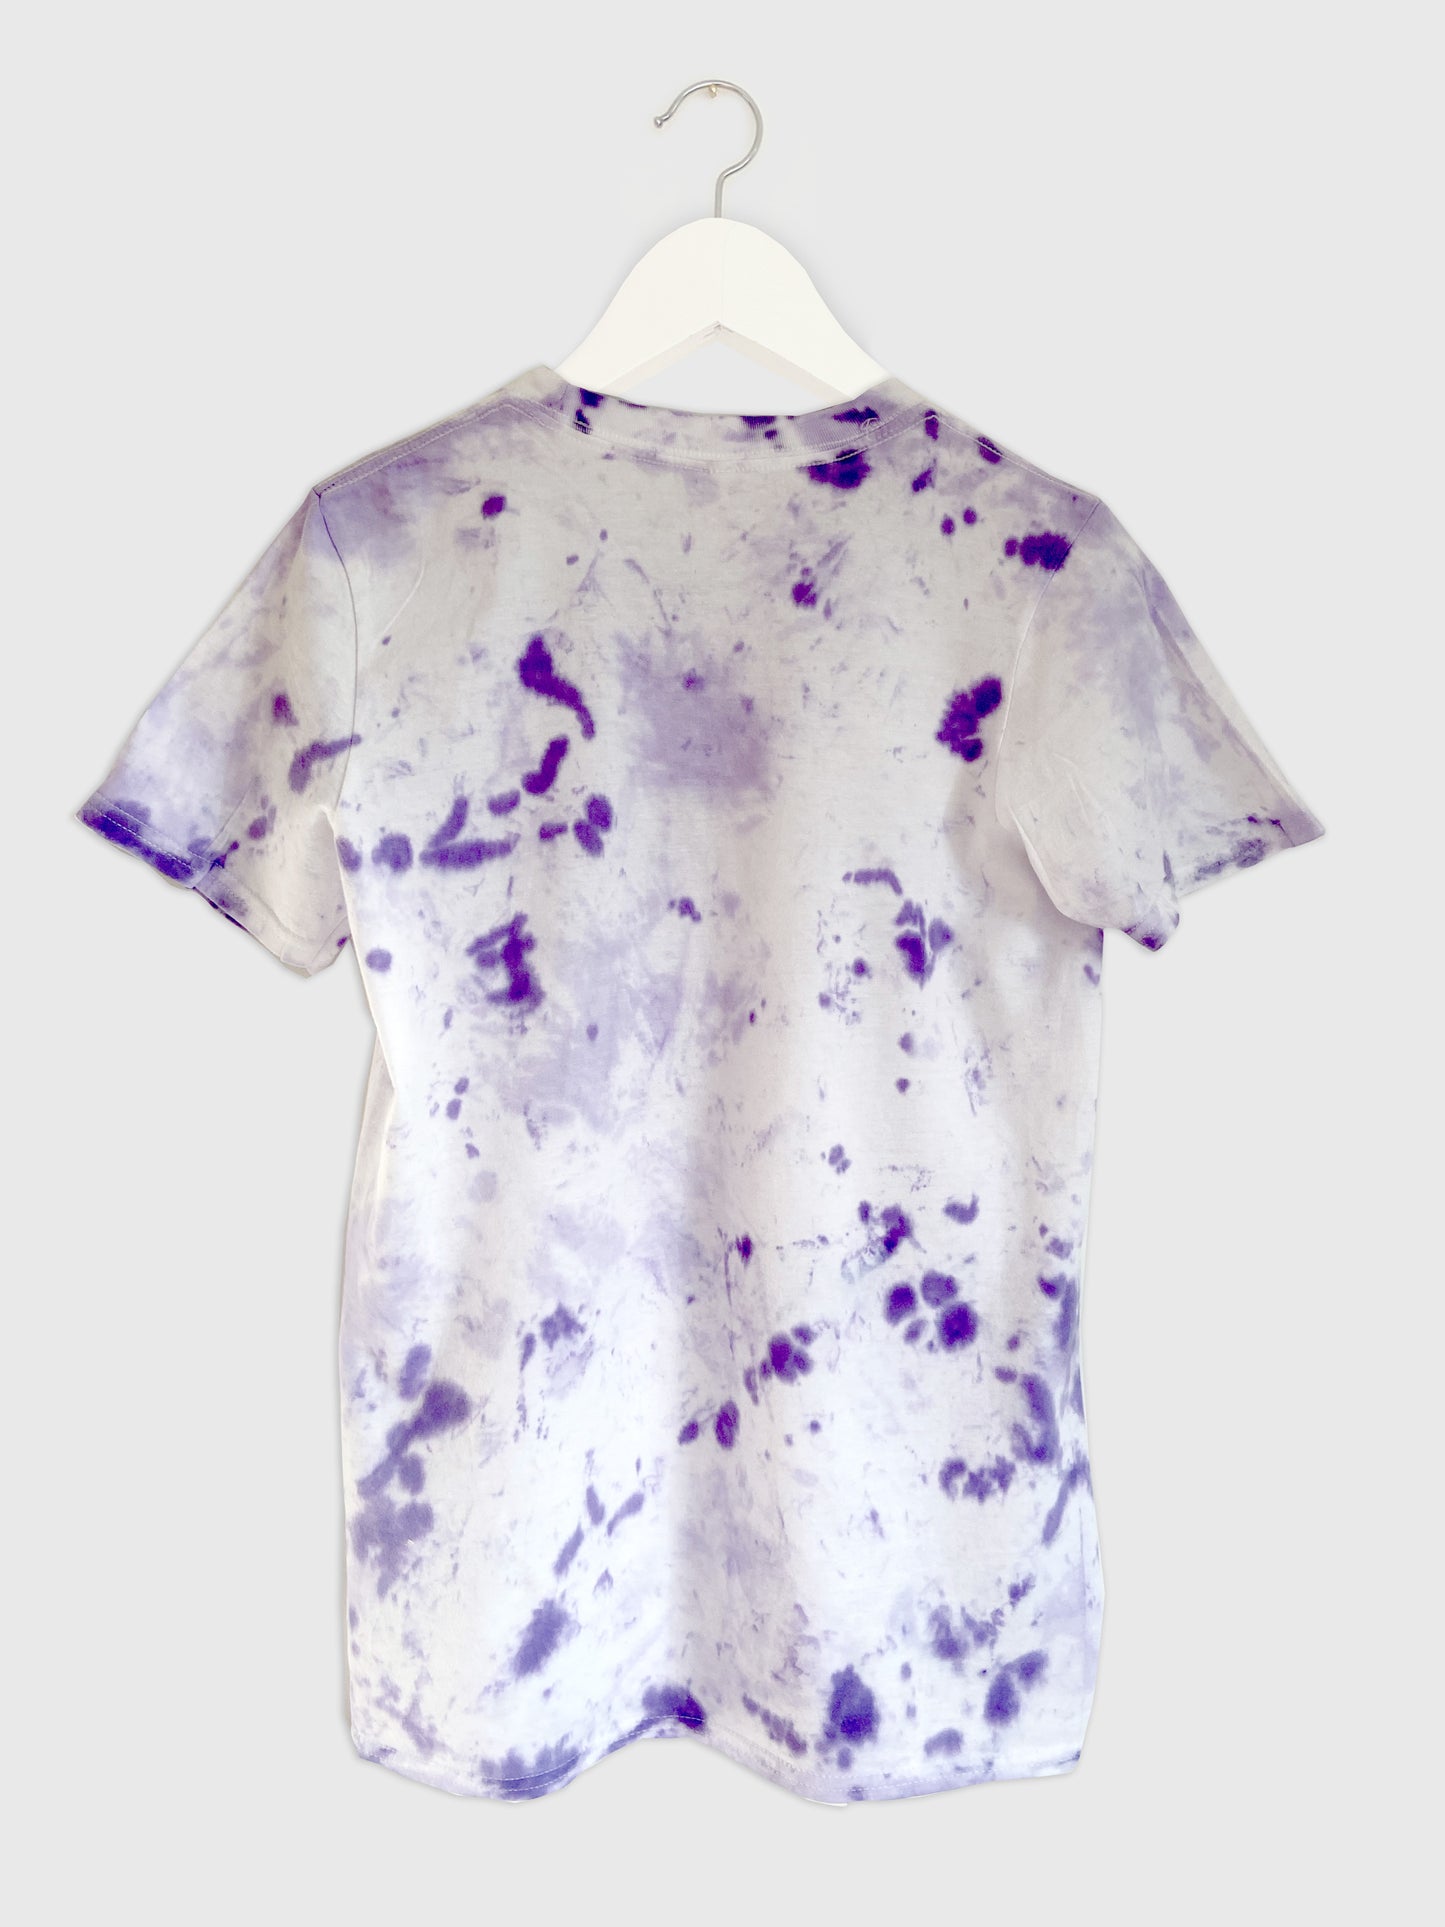 Tie-dye Unisex Top in Lavender